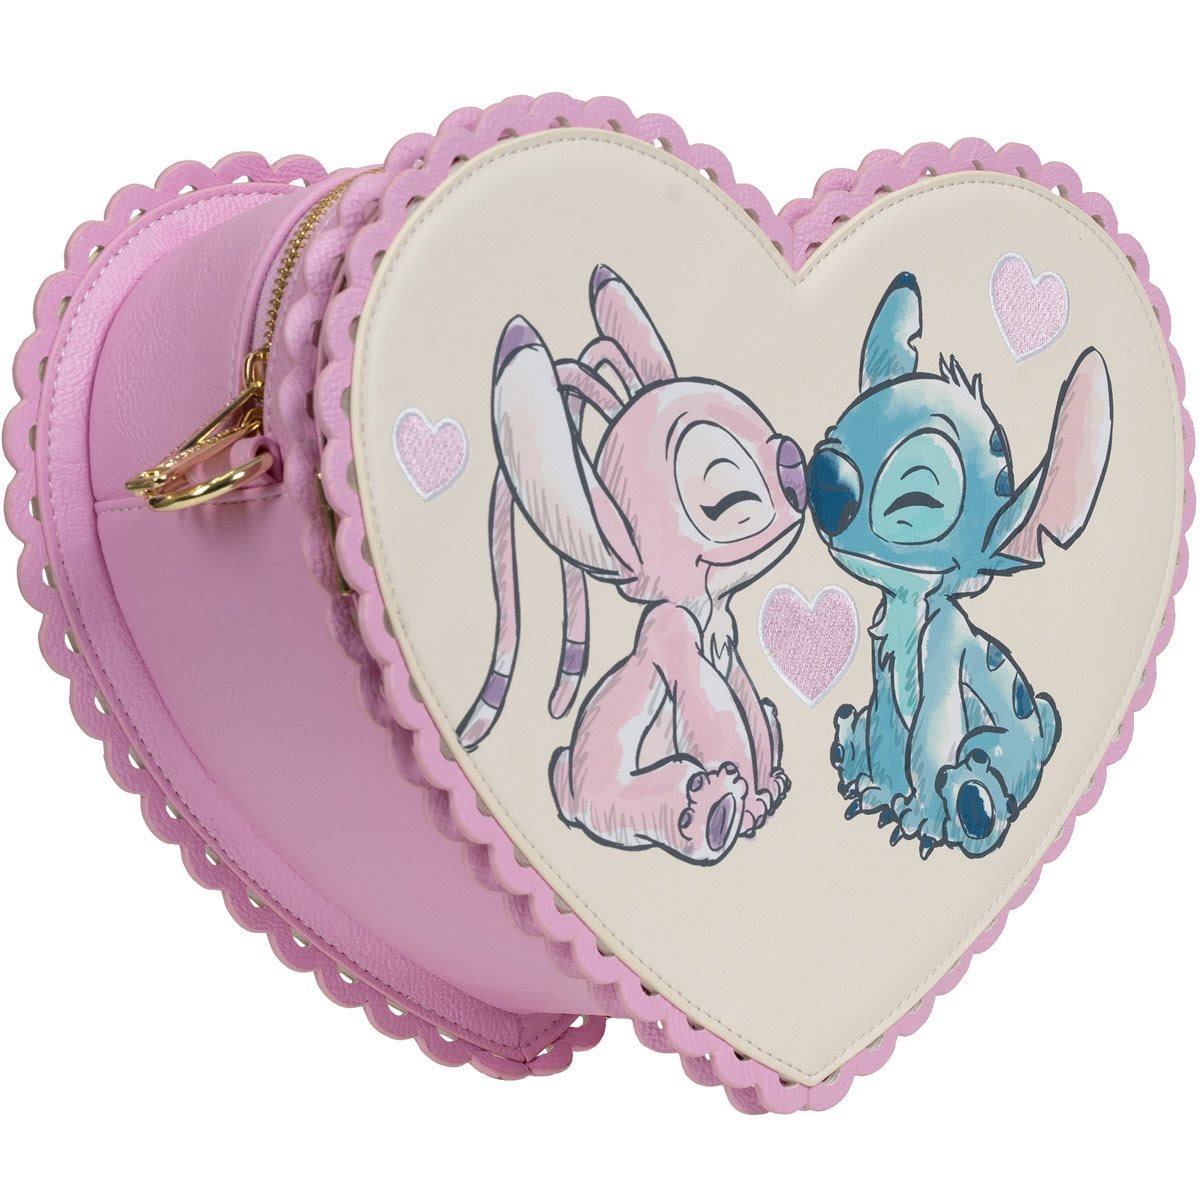 Loungefly Disney Lilo and Stitch Angel Crossbody